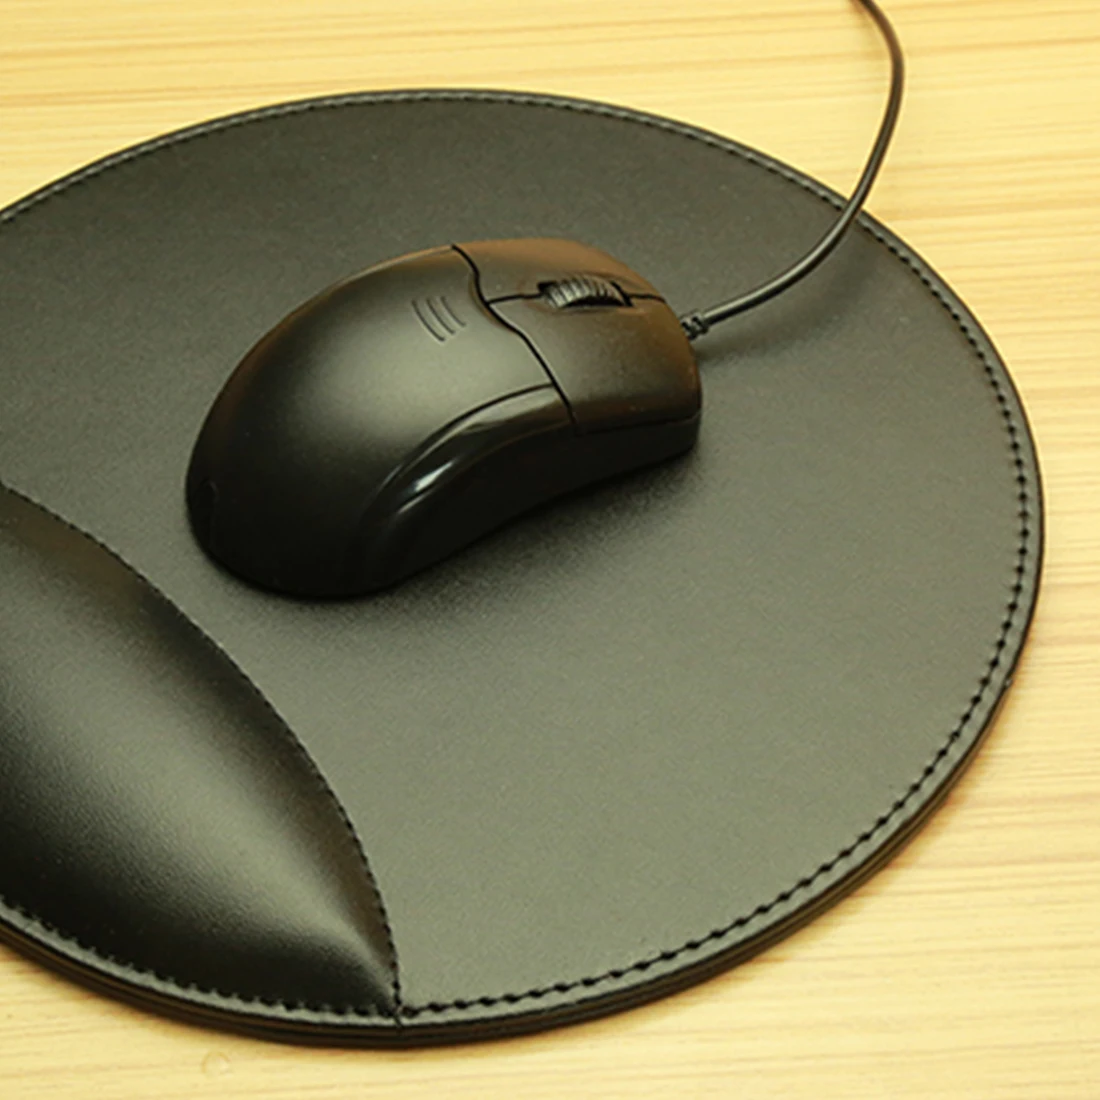 NOYOKERE хорошая 3D кожаный компьютерный коврик для мыши с подставкой для запястья эргономичный офисный мягкий губчатый коврик для поддержки запястья коврик для мыши для ПК